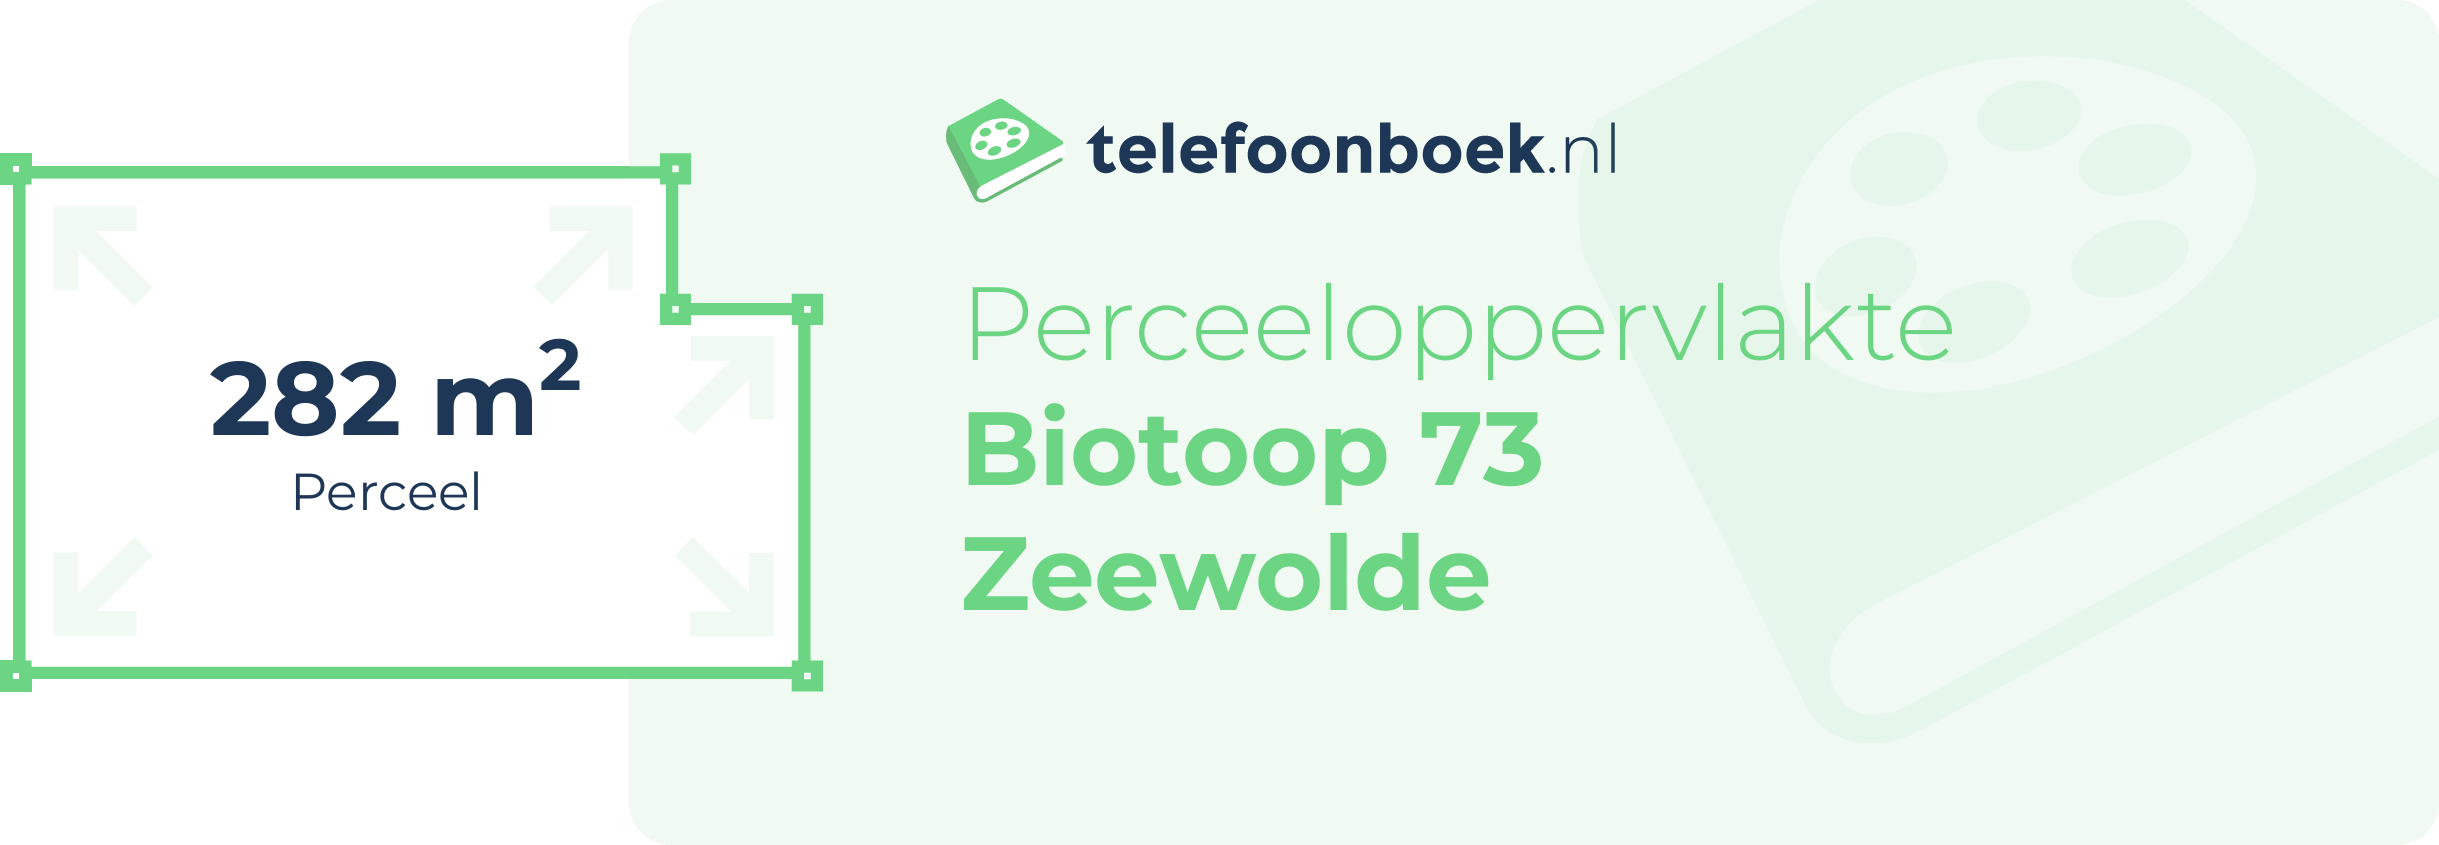 Perceeloppervlakte Biotoop 73 Zeewolde